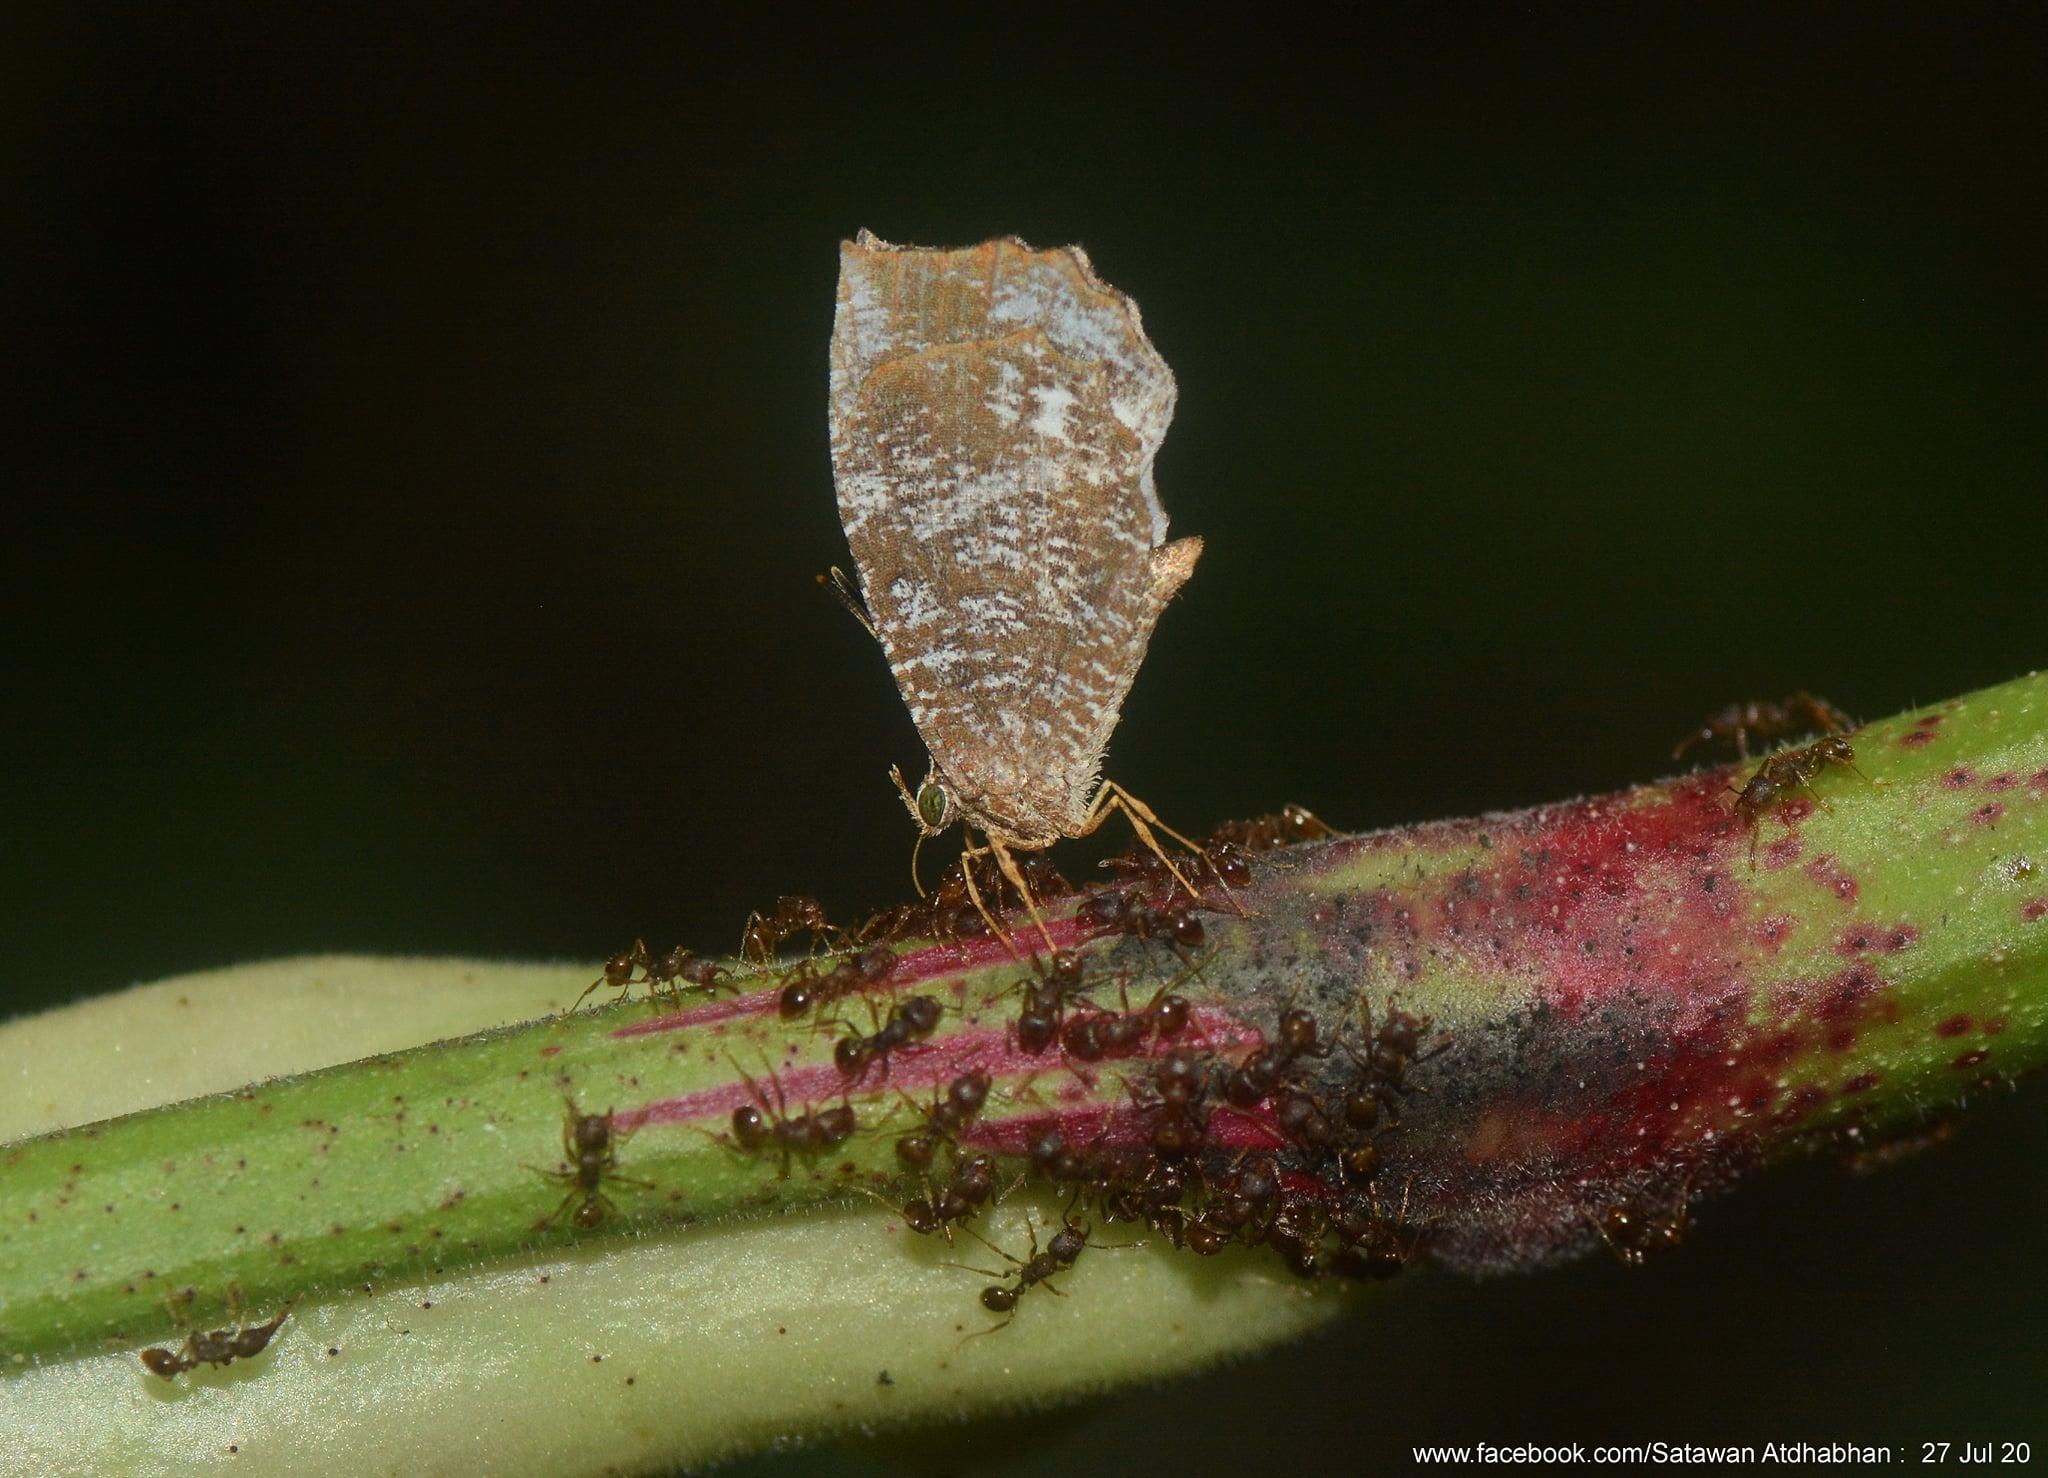 Logania malayica malayica : Malayan Mottle / ผีเสื้อลายหินอ่อนมลายู